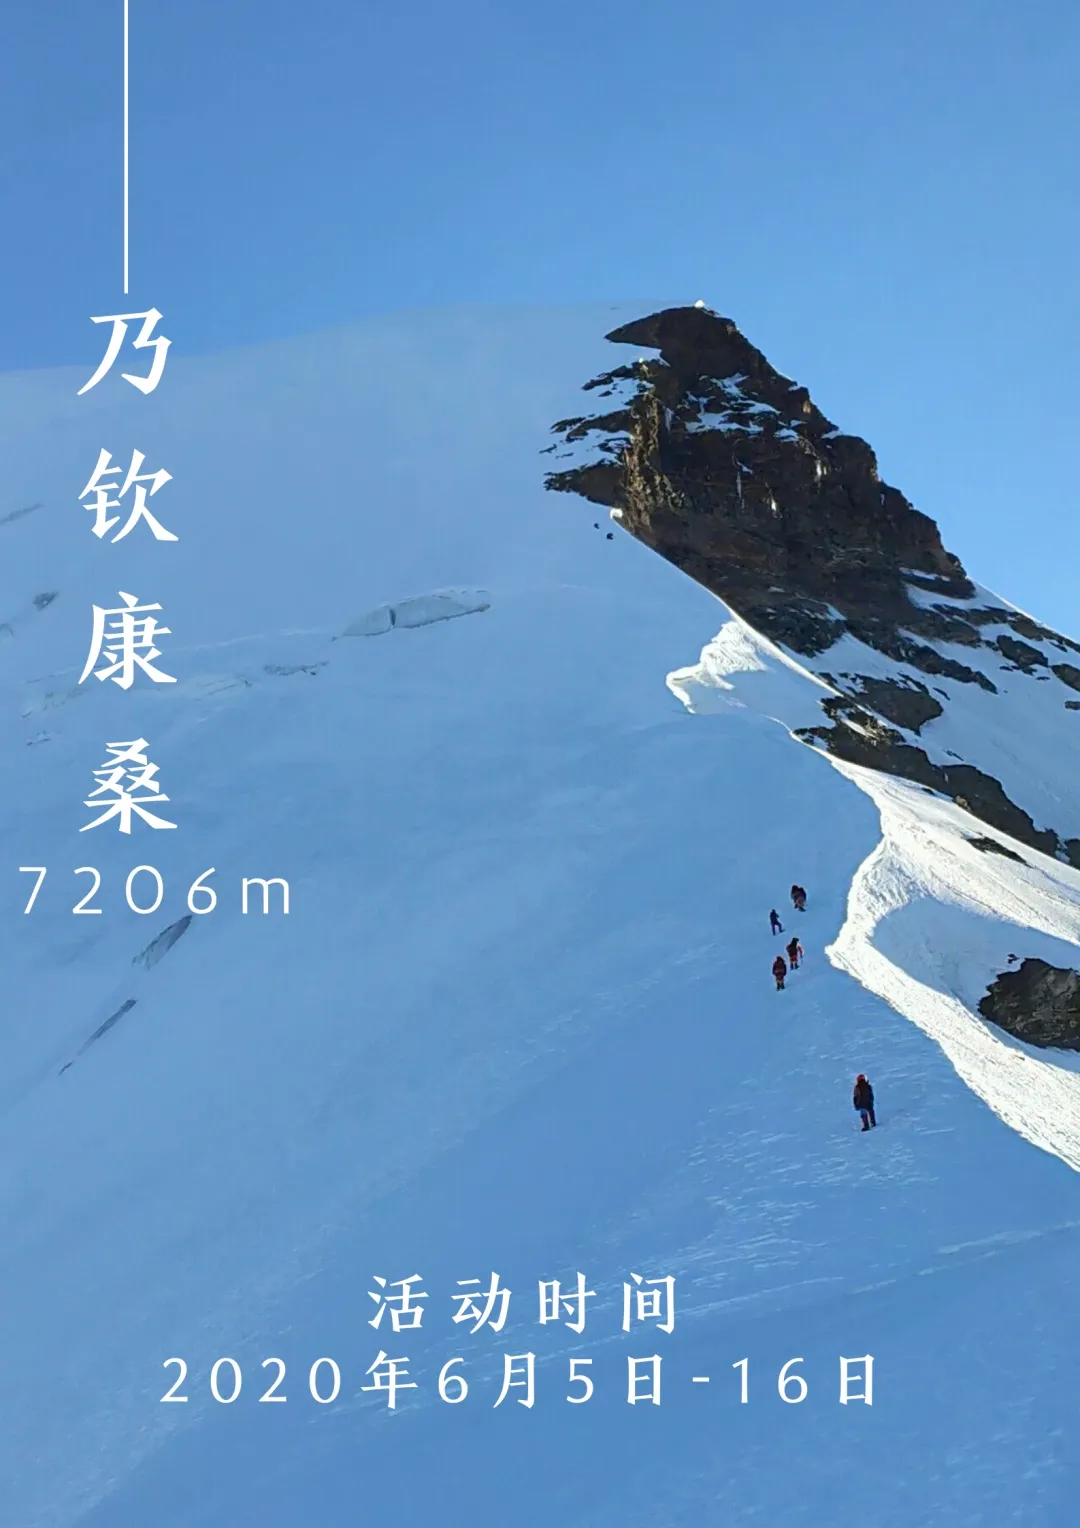 2020年乃钦康桑峰登山活动(图2)